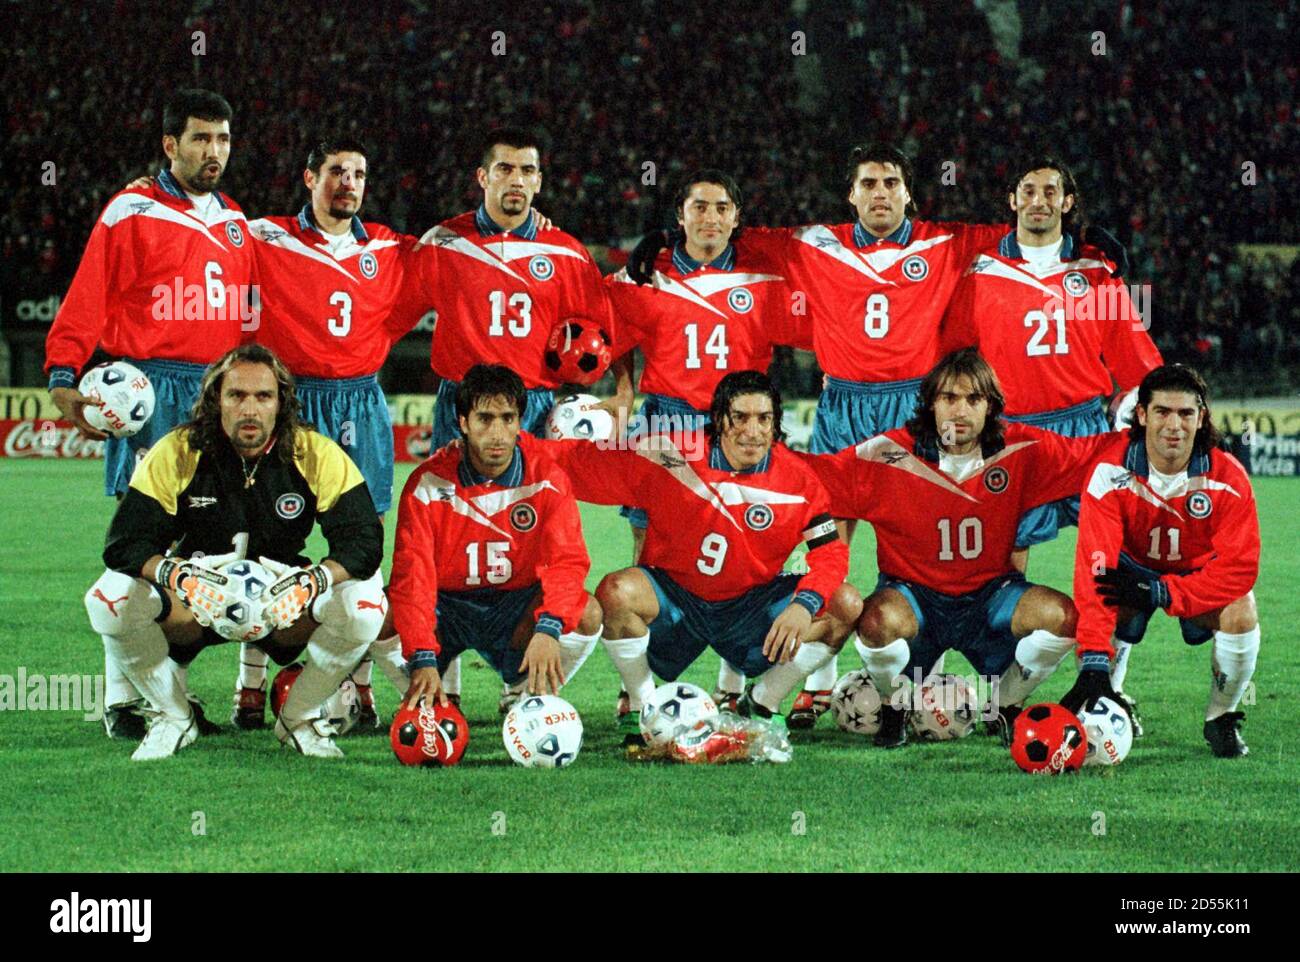 Squadra nazionale cilena di calcio che inizia i giocatori in posa per i  fotografi prima del calcio d'inizio della partita contro l'Ecuador a  Santiago, Cile 23 giugno. Riga posteriore (L-R) Pedro Reyes,